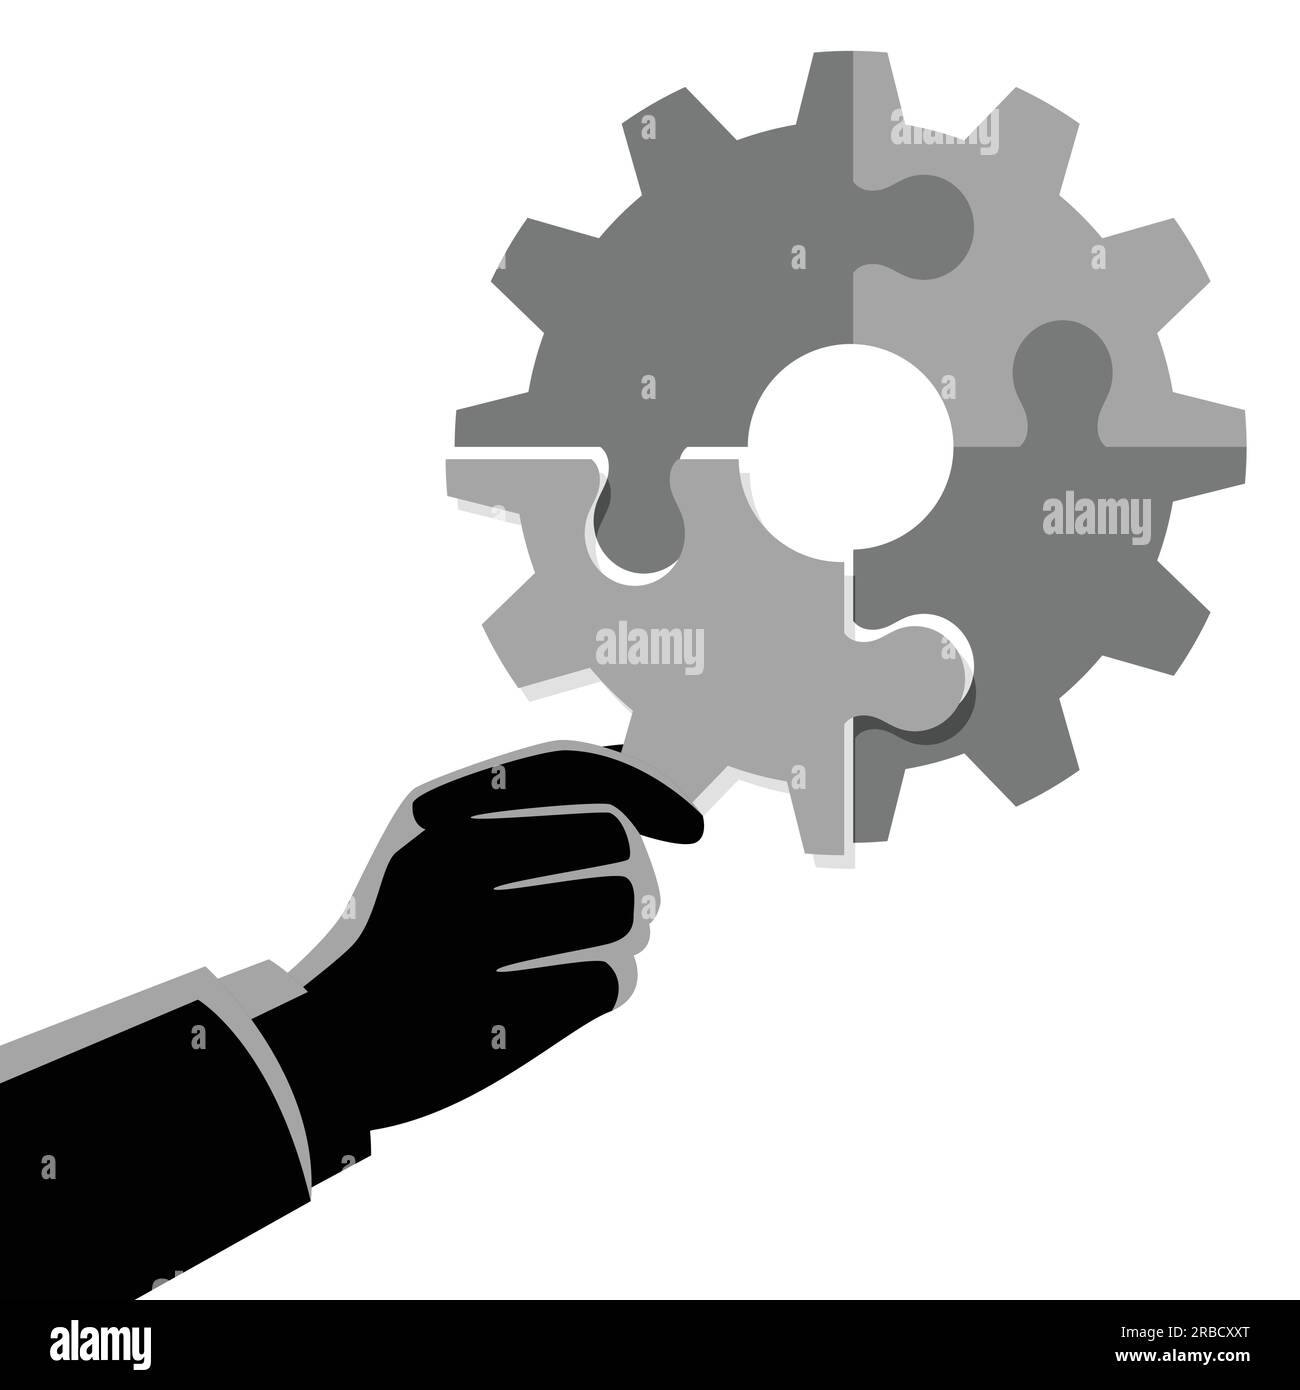 Business Concept Vektor Illustration von Geschäftsmann Hand hält das letzte Stück Puzzle, das eine Zahnrad, Geschäft, komplett, Abschluss, solut Stock Vektor